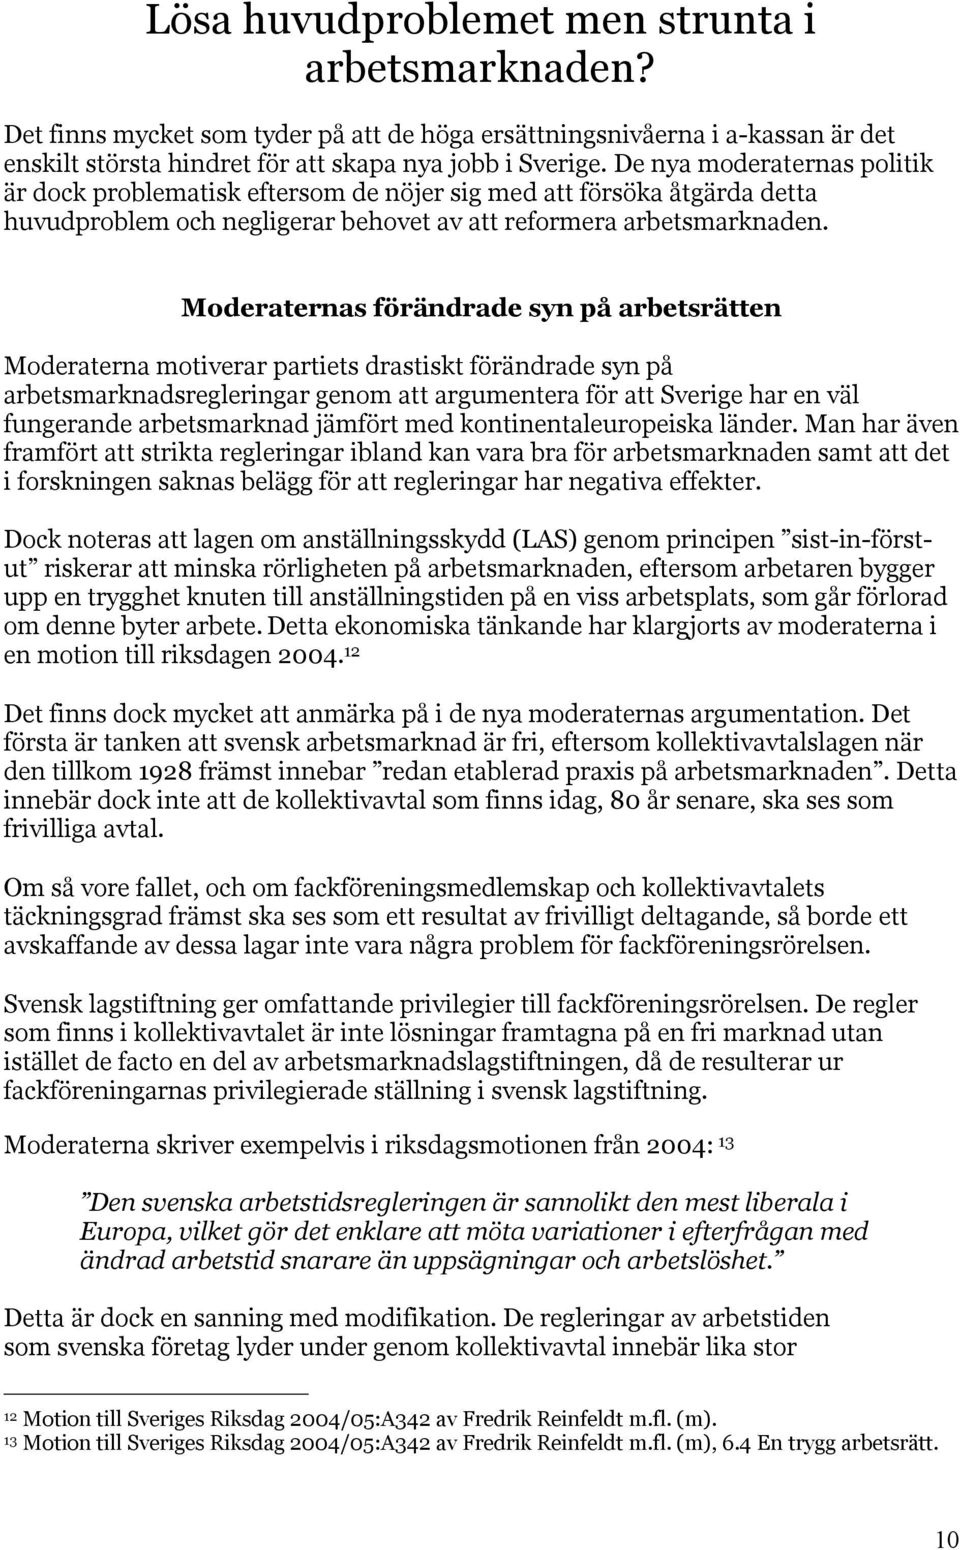 Moderaternas förändrade syn på arbetsrätten Moderaterna motiverar partiets drastiskt förändrade syn på arbetsmarknadsregleringar genom att argumentera för att Sverige har en väl fungerande